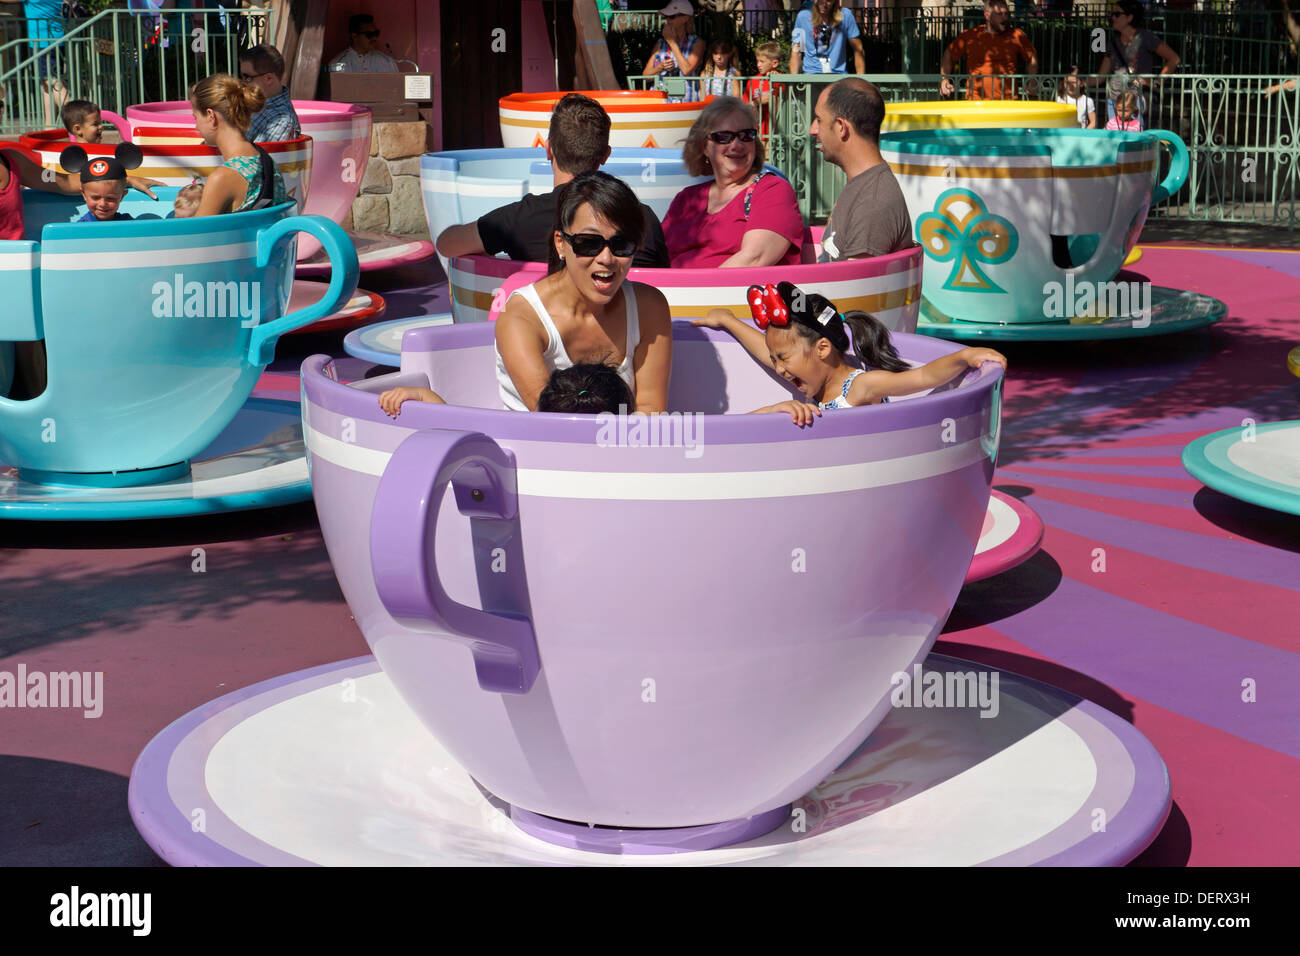 Disneyland, Mad Tea Party Teacup Fahrten, Alice im Wunderland, Anaheim, Kalifornien Stockfoto